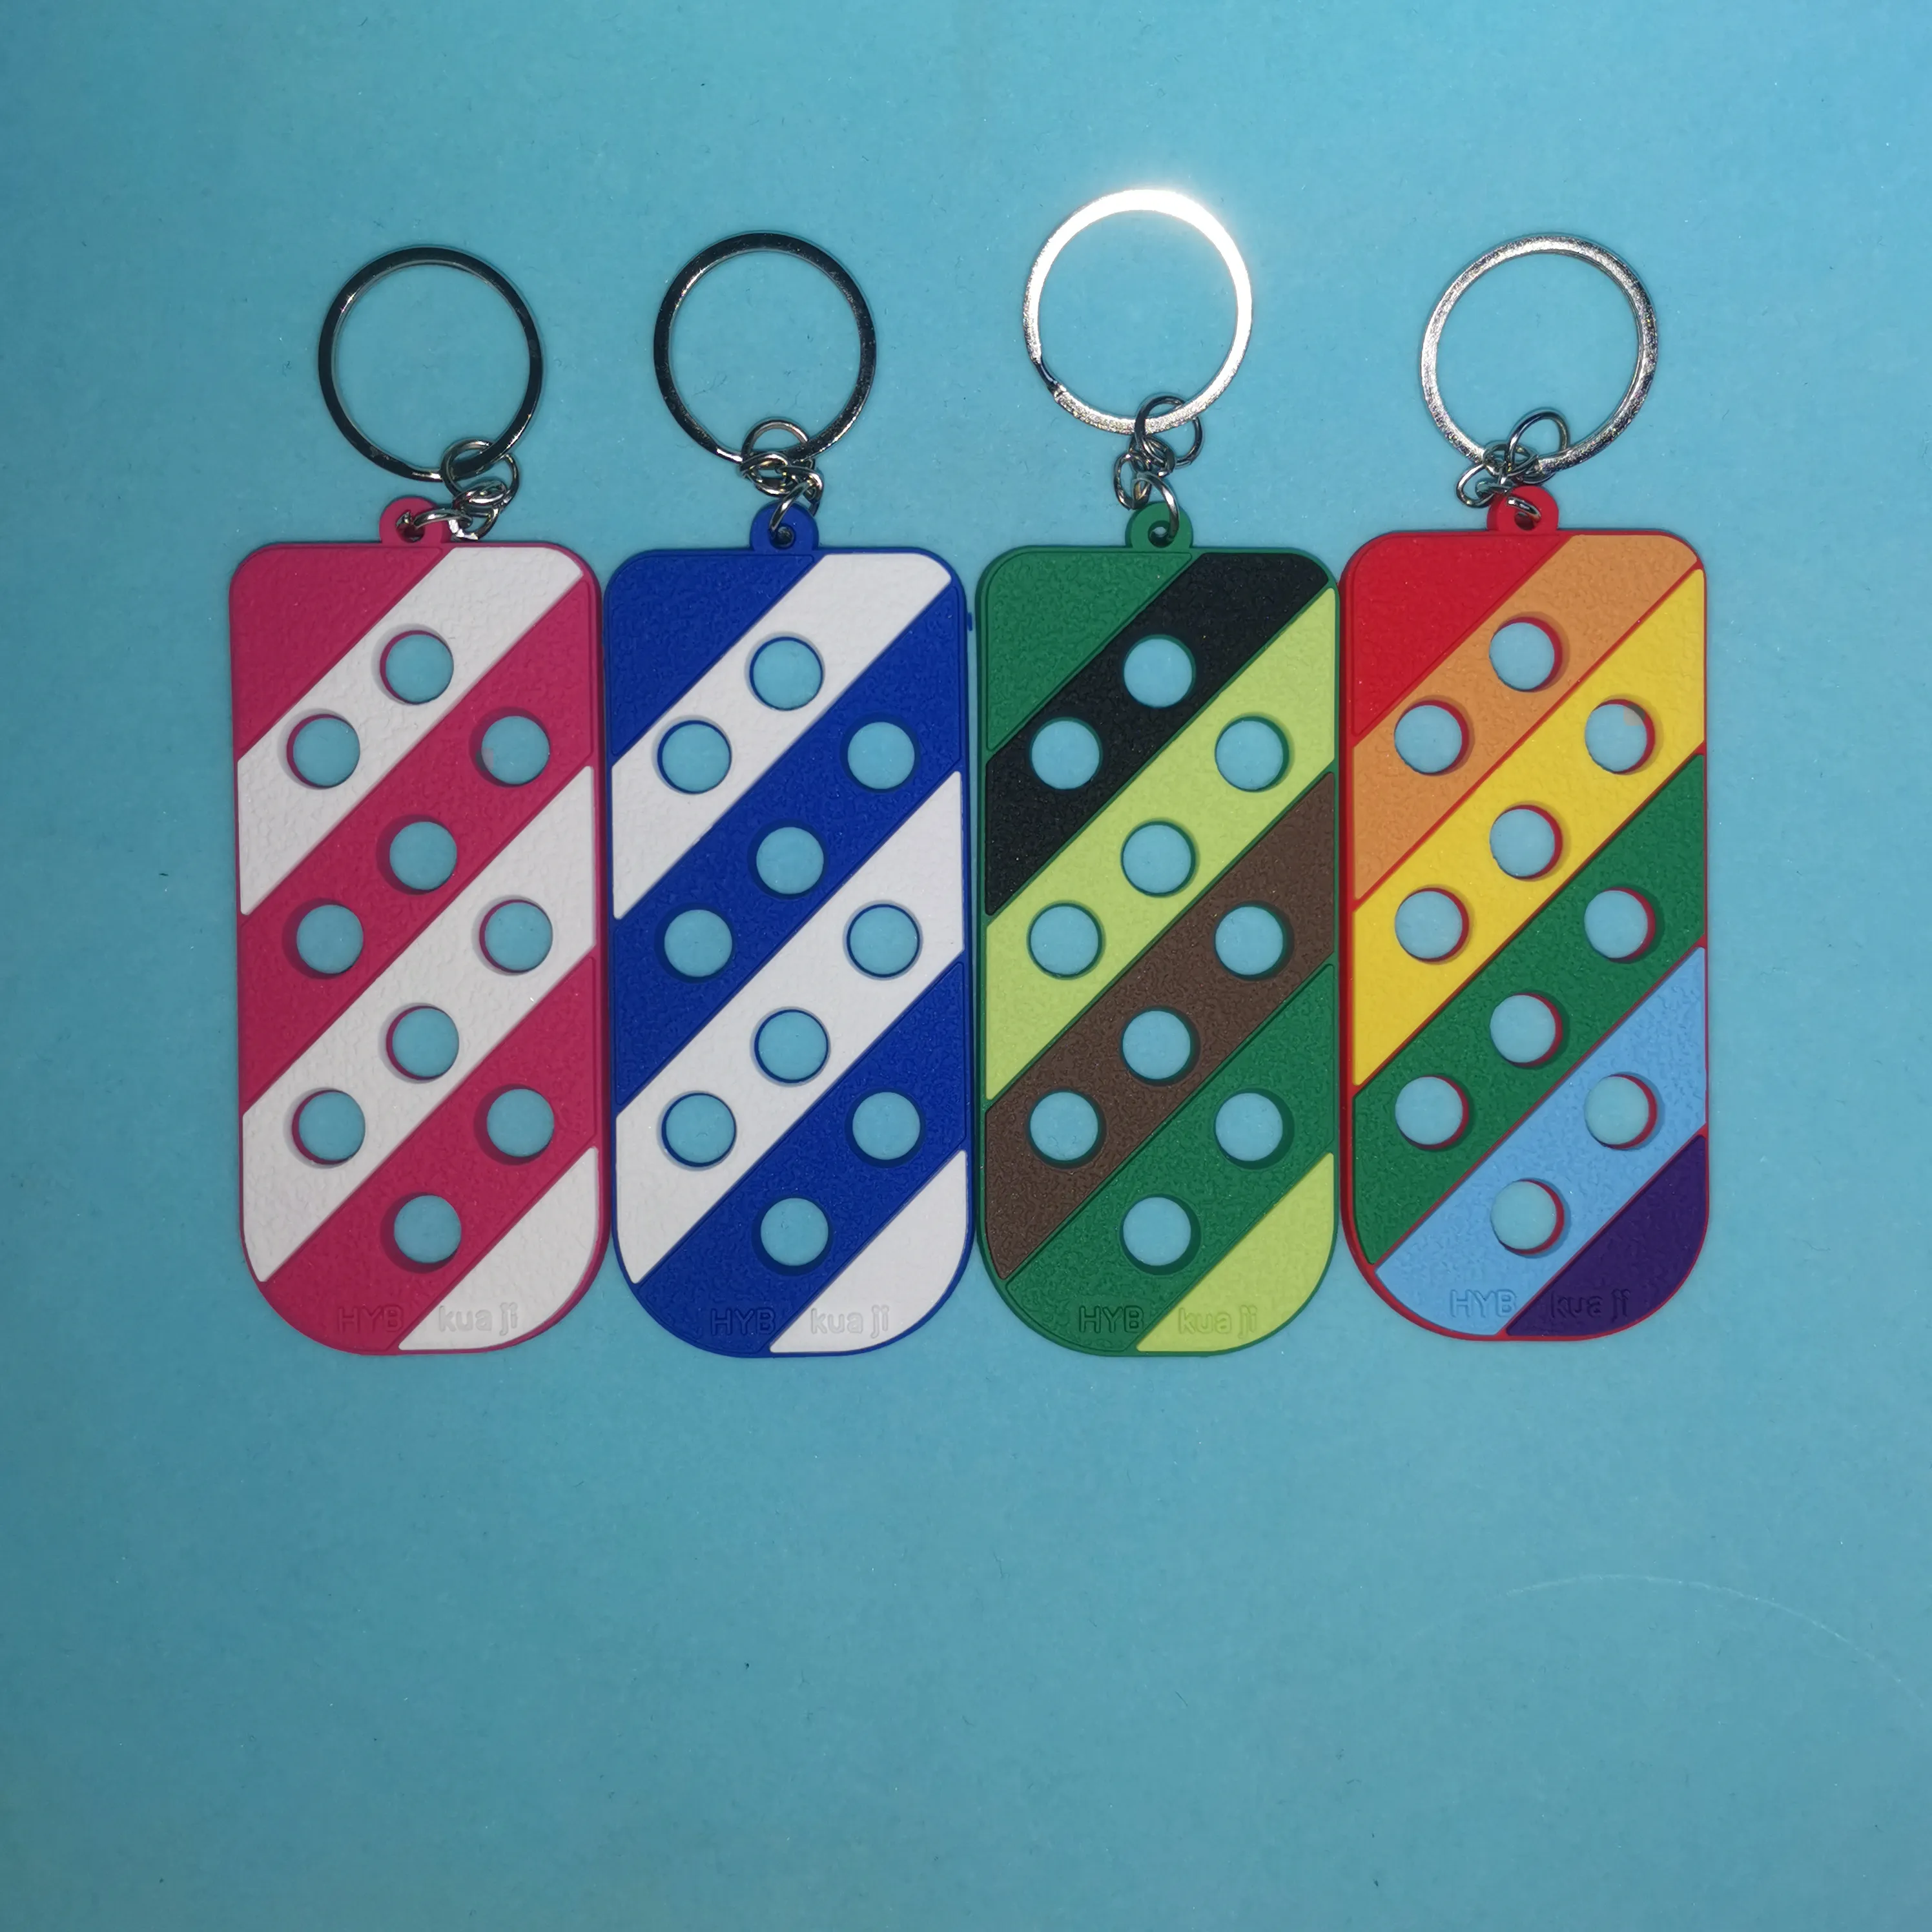 Krokodil-Schlüsselanhängerhalter, Bonbonfarbene Silikon-Schlüsselanhängerplatte für Charms, Frauen, Kinder, Geschenk. Kann mit Schuhblumen kombiniert werden